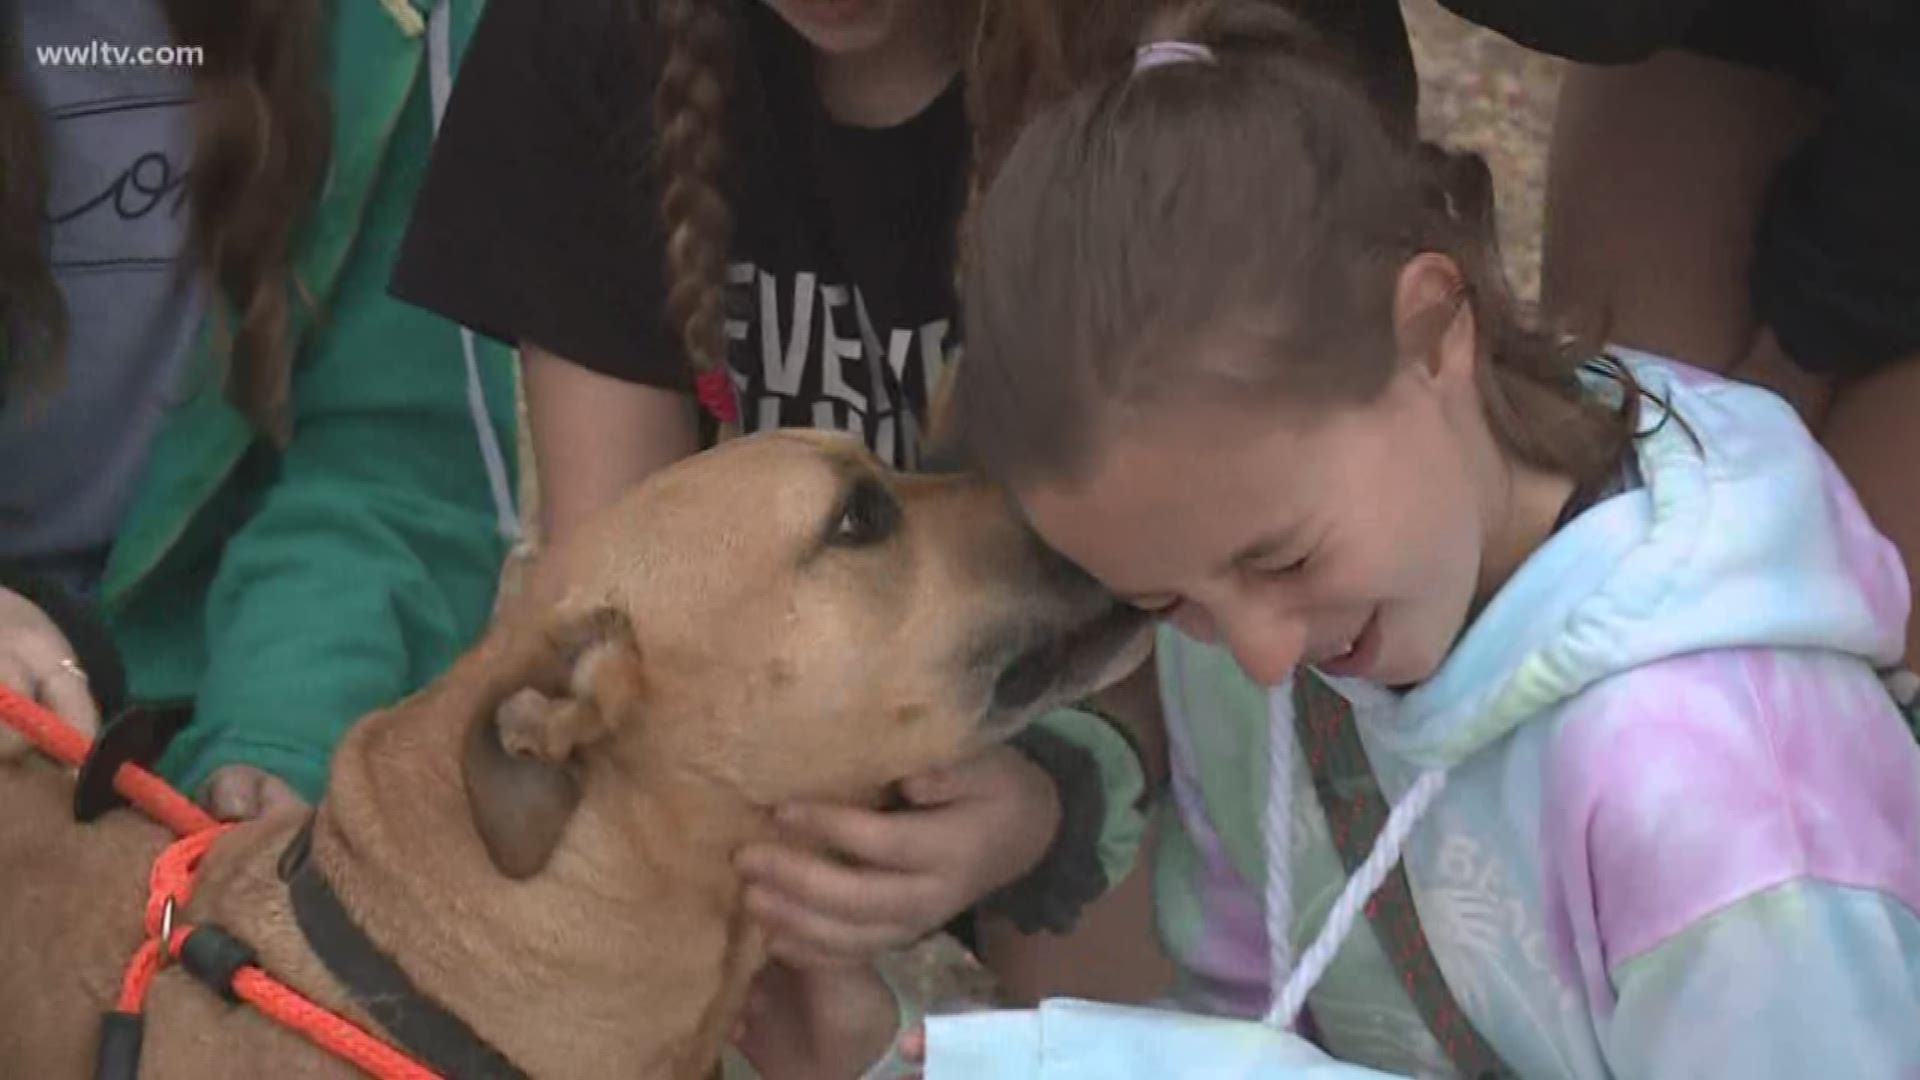 After 'Pit Bulls & Parolees' New Orleans shelter floods, fans walk dogs,  donate blankets